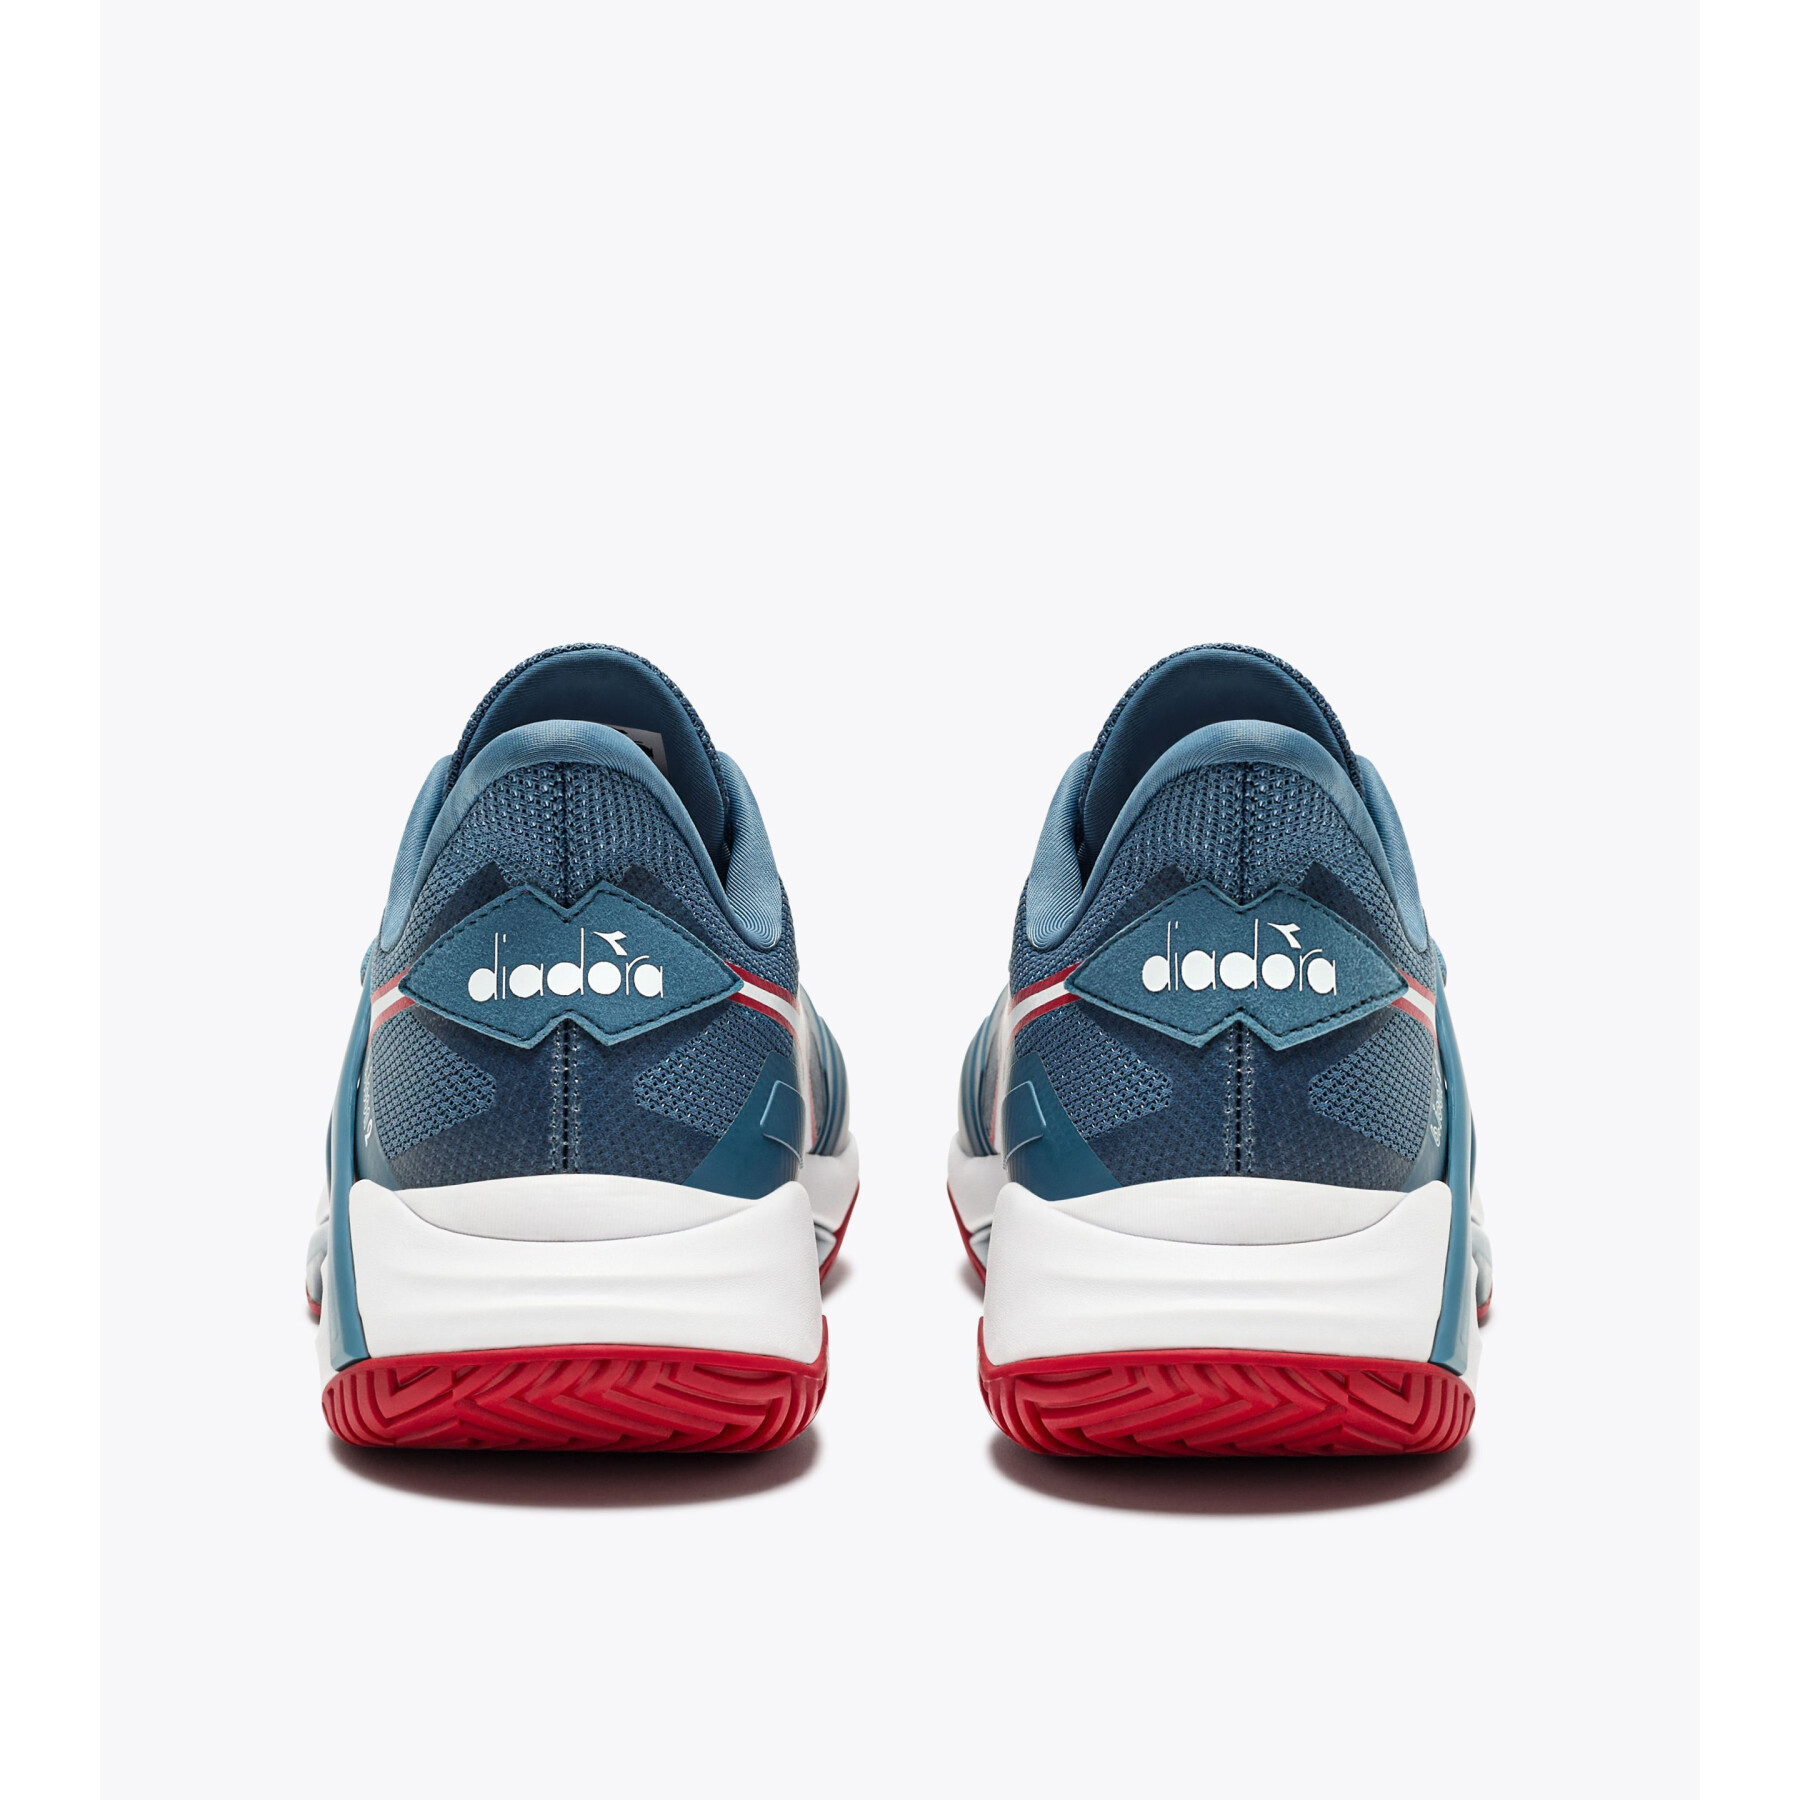 Sapatos de ténis Diadora B.Icon 2 AG